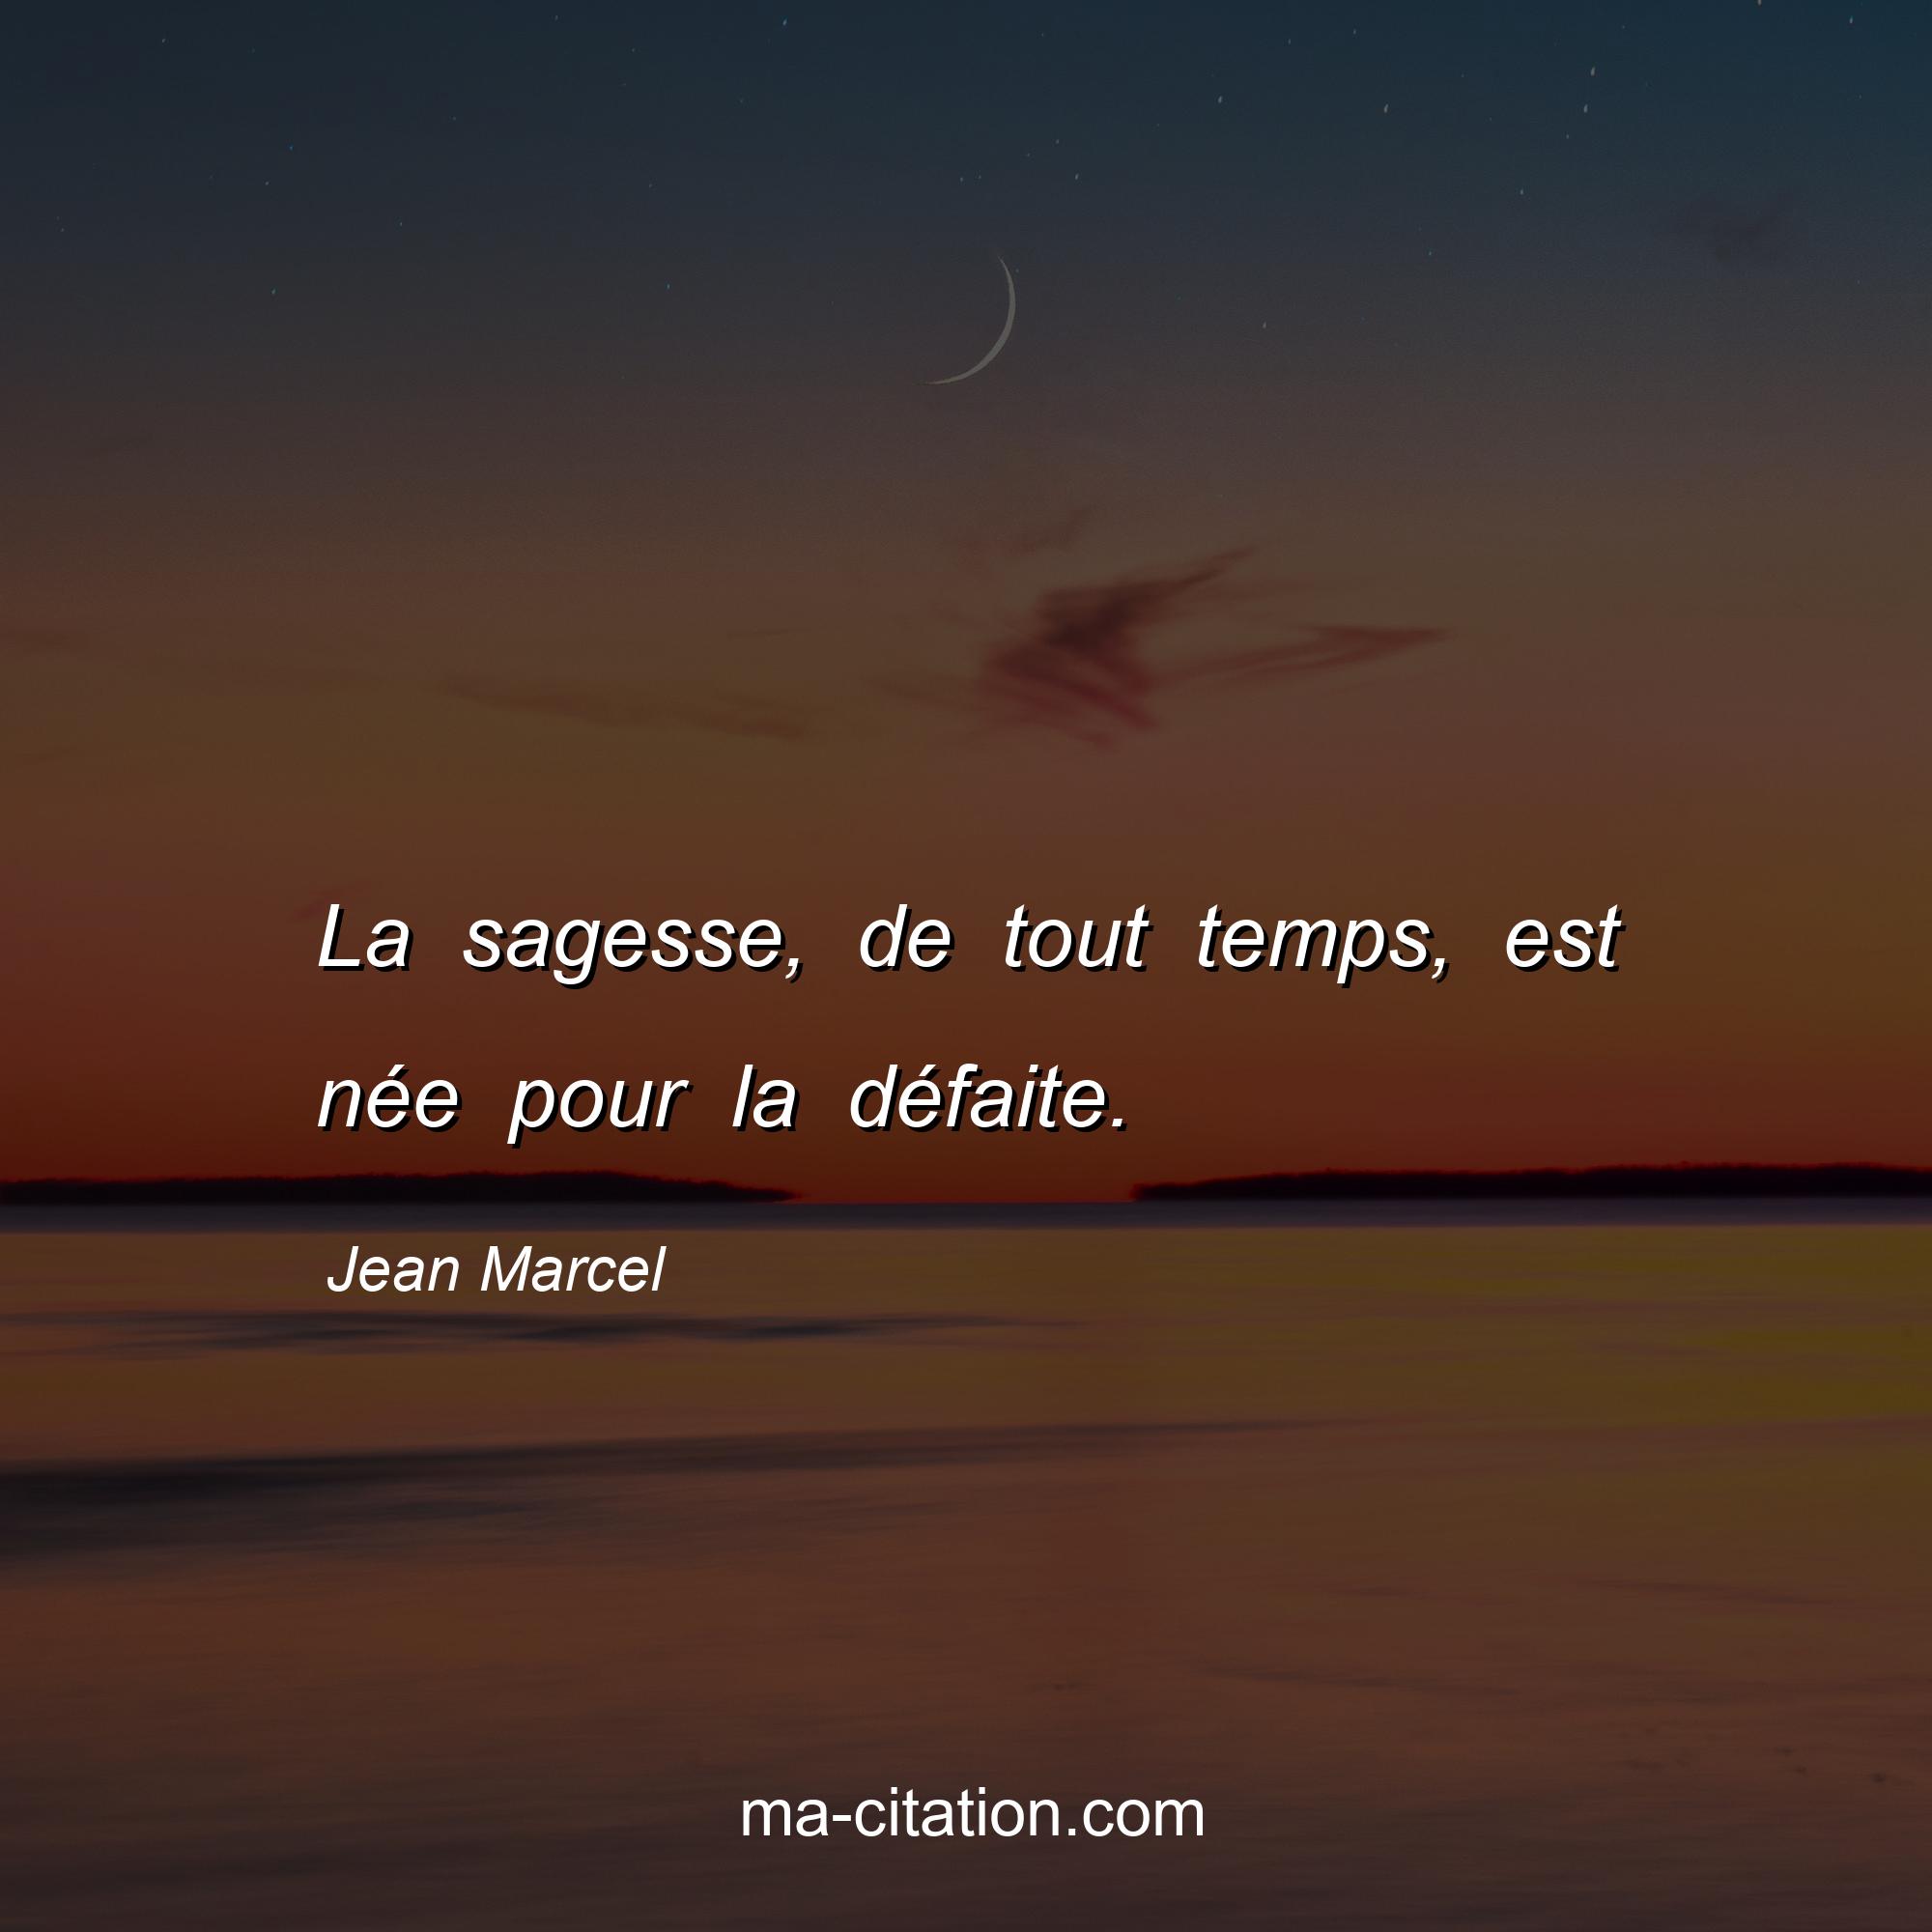 Jean Marcel : La sagesse, de tout temps, est née pour la défaite.